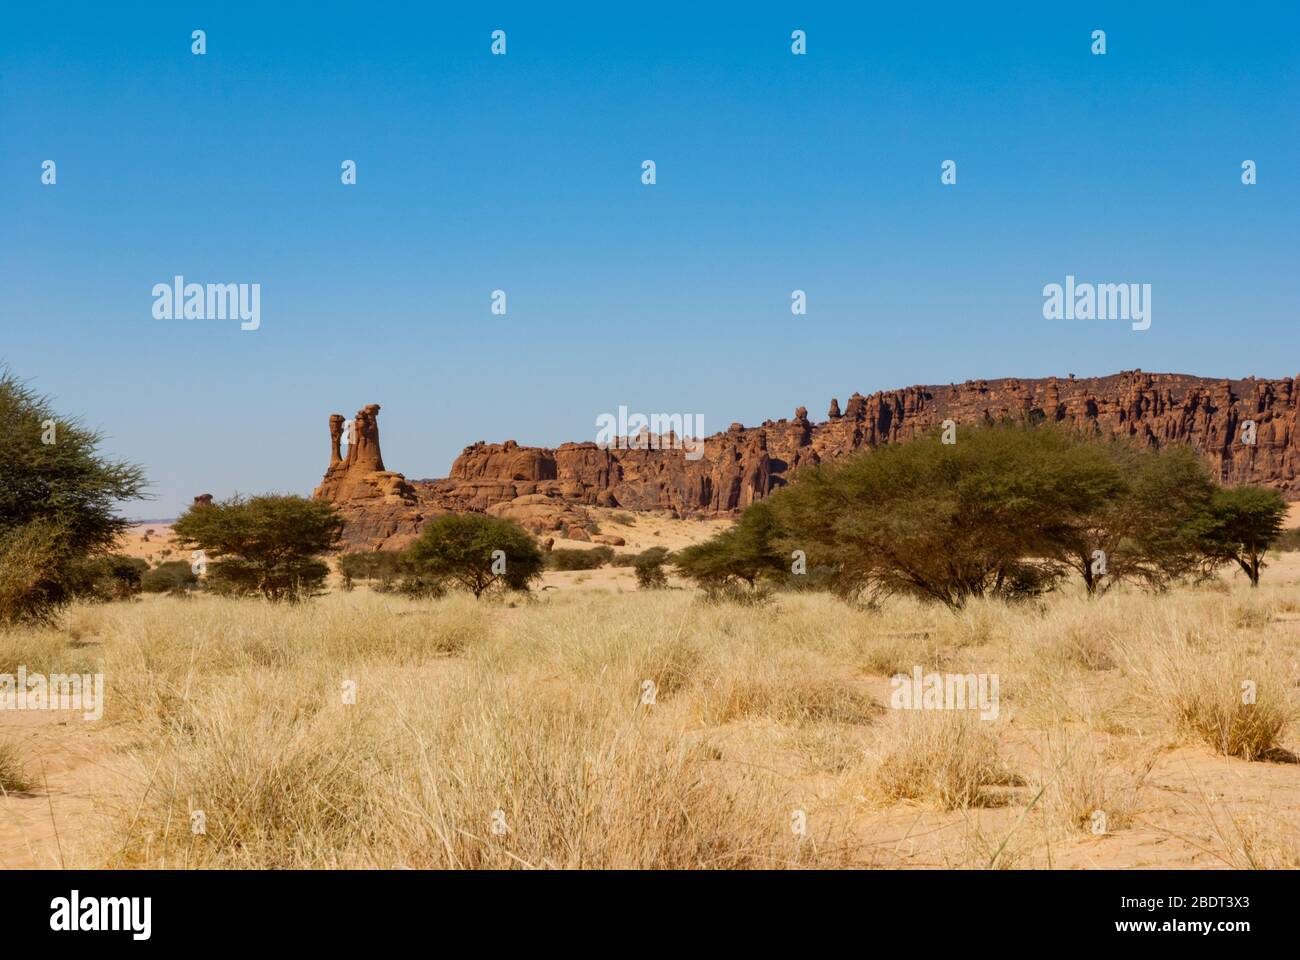 Formazione naturale di roccia e vegetazione desertica - erba secca e alberi bassi, deserto del Sahara, Ciad, Africa Foto Stock